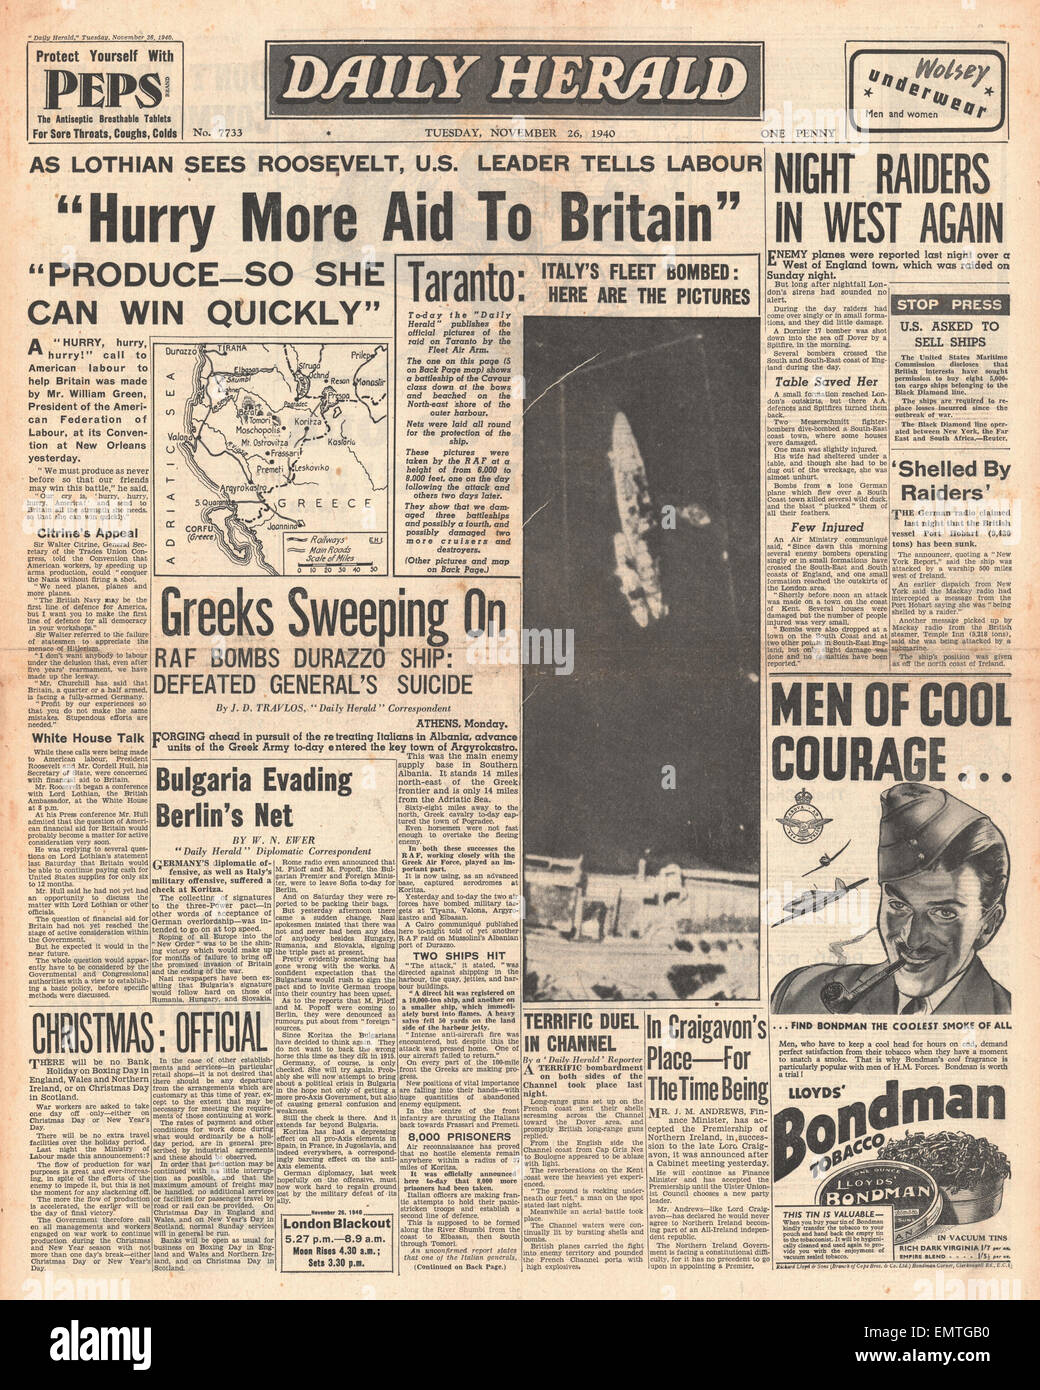 1940 front page Daily Herald William Green demande de se presser davantage d'aides à Britan Banque D'Images